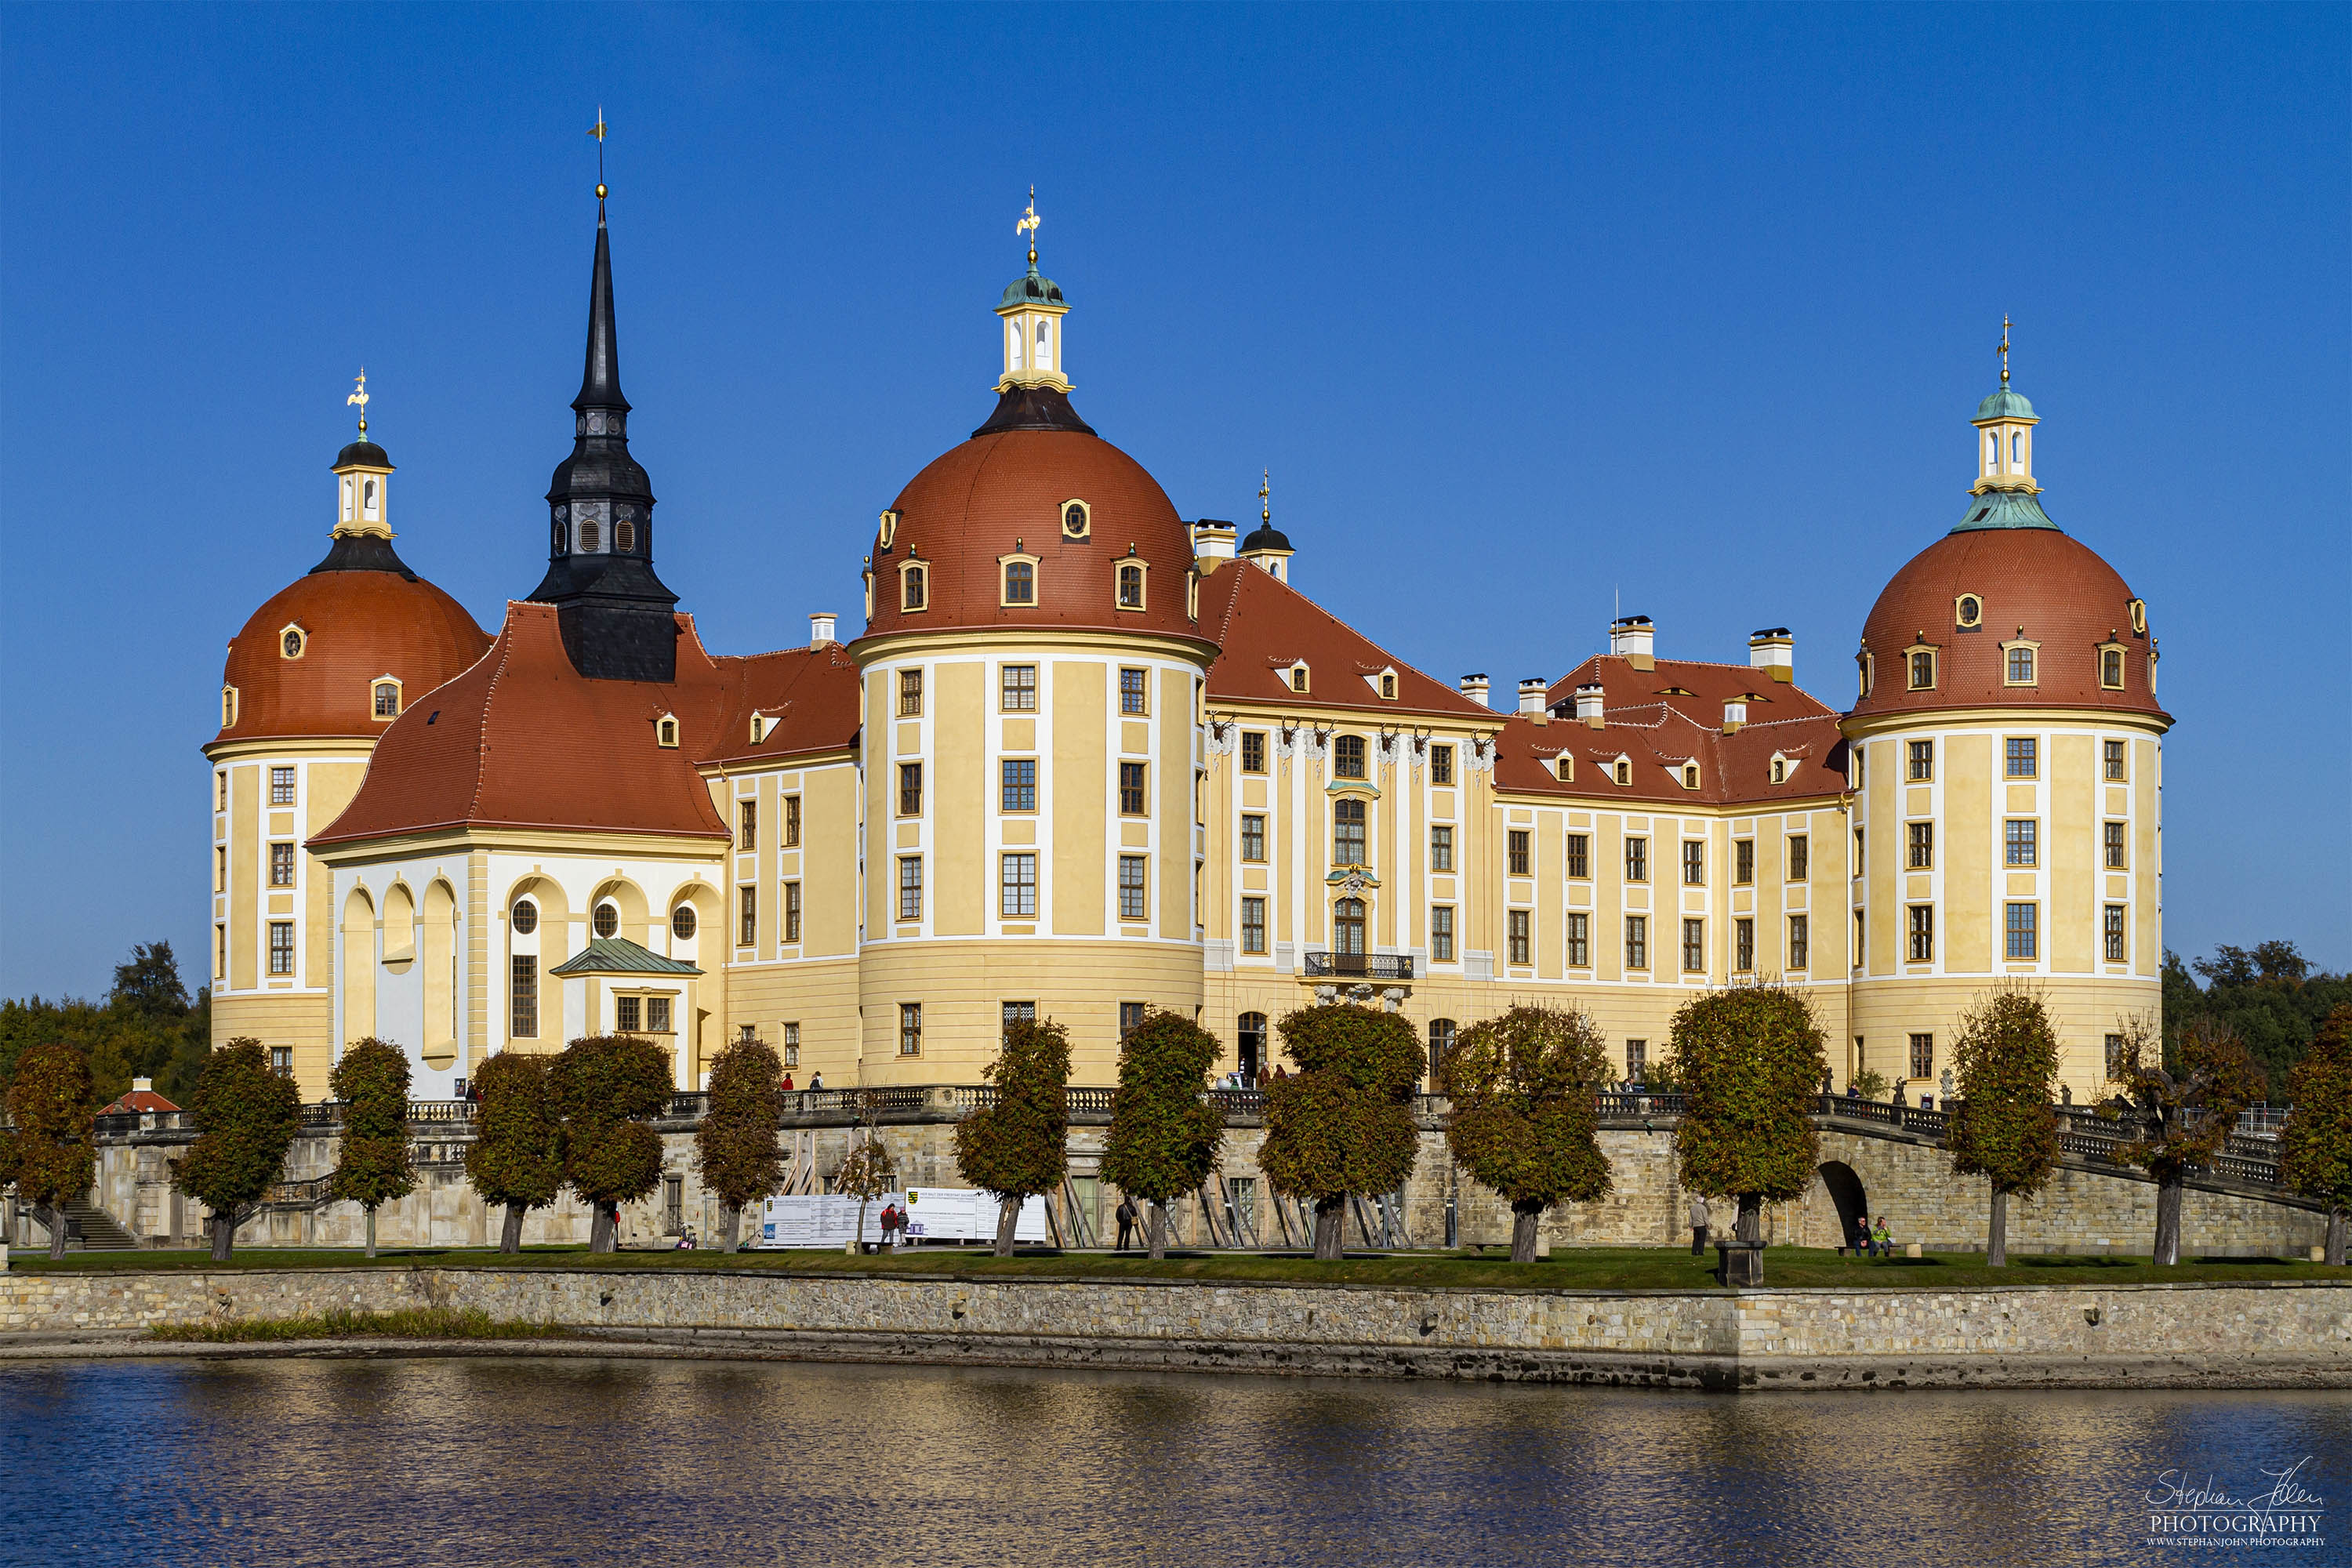 <p>Das Schloss Moritzburg liegt in der gleichnamigen Gemeinde Moritzburg nahe Dresden. Das auf ein Jagdhaus des 16. Jahrhunderts zurückgehende Jagdschloss erhielt seine heutige Gestalt im 18. Jahrhundert unter August dem Starken.</p>